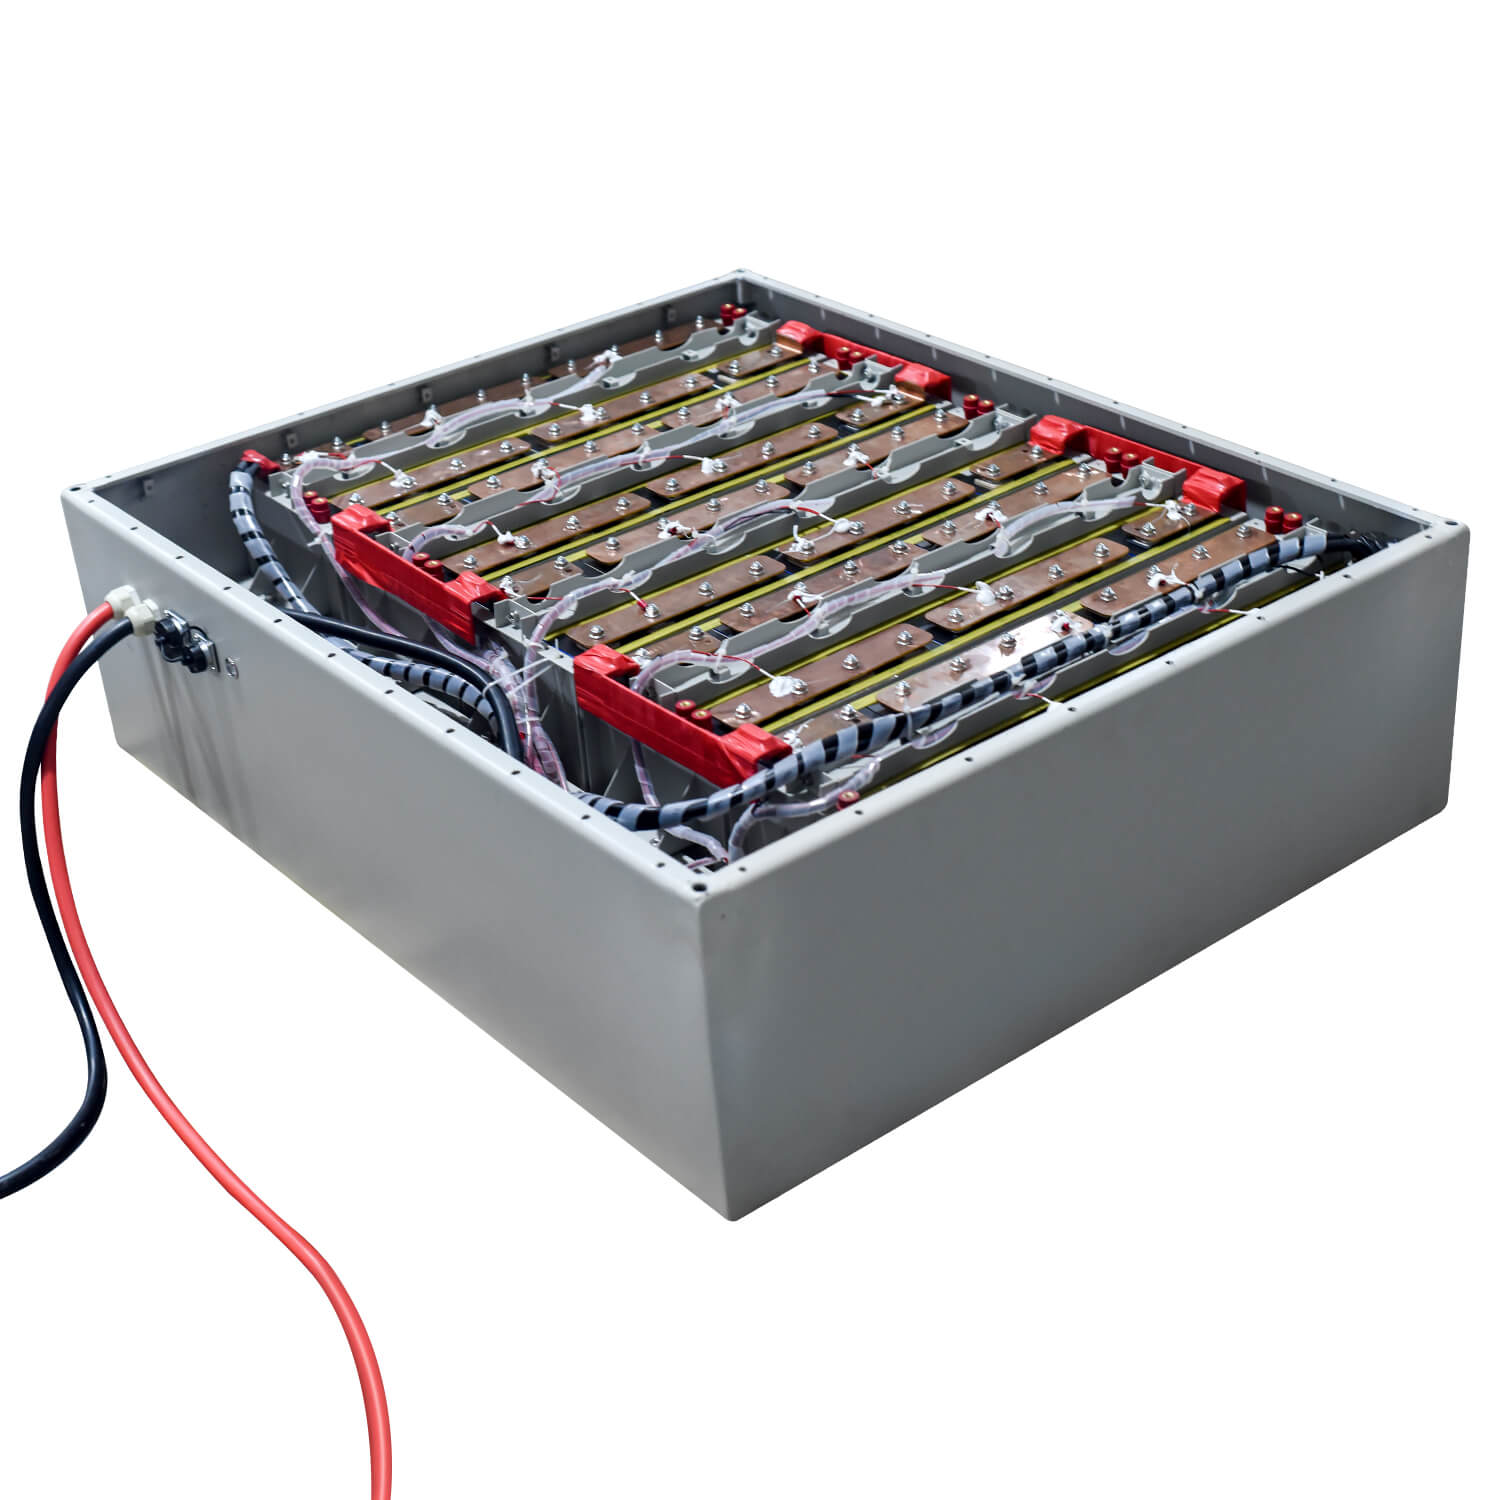 Čína 80V 412AH lithium iontová baterie lifepo4 baterie pro výrobce vozidel, továrna.Koupit 80V 412AH lithium iontová baterie lifepo4 baterie pro vozidlo za dobrou cenu u Allith